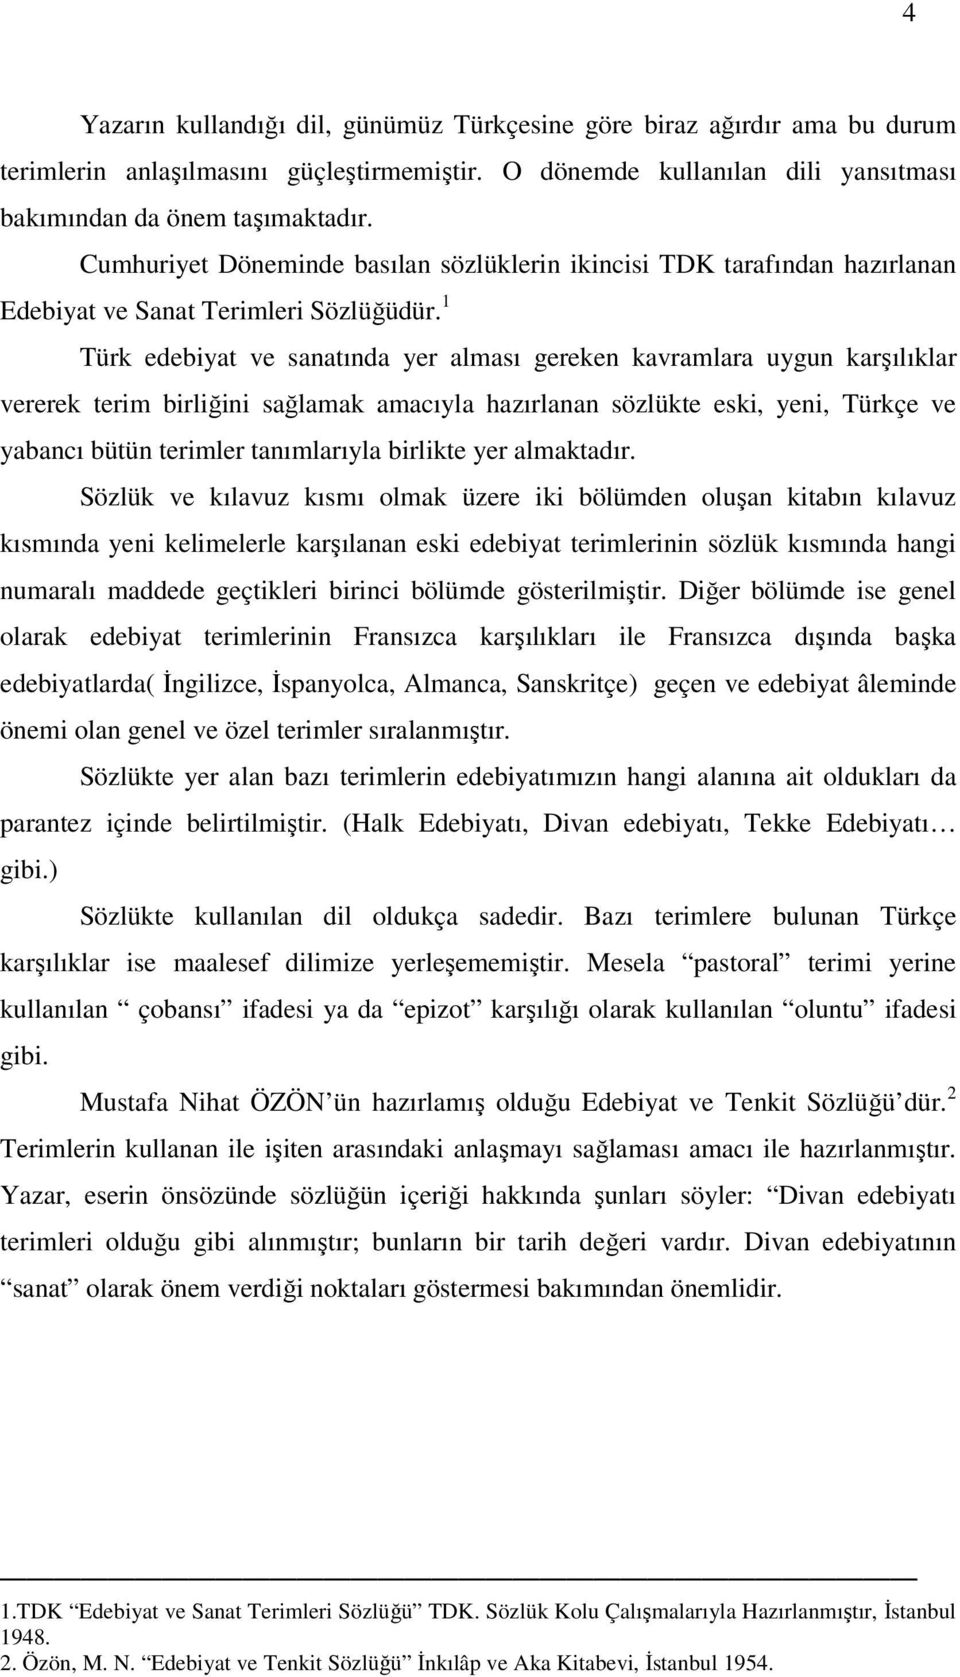 1 Türk edebiyat ve sanatında yer alması gereken kavramlara uygun karşılıklar vererek terim birliğini sağlamak amacıyla hazırlanan sözlükte eski, yeni, Türkçe ve yabancı bütün terimler tanımlarıyla